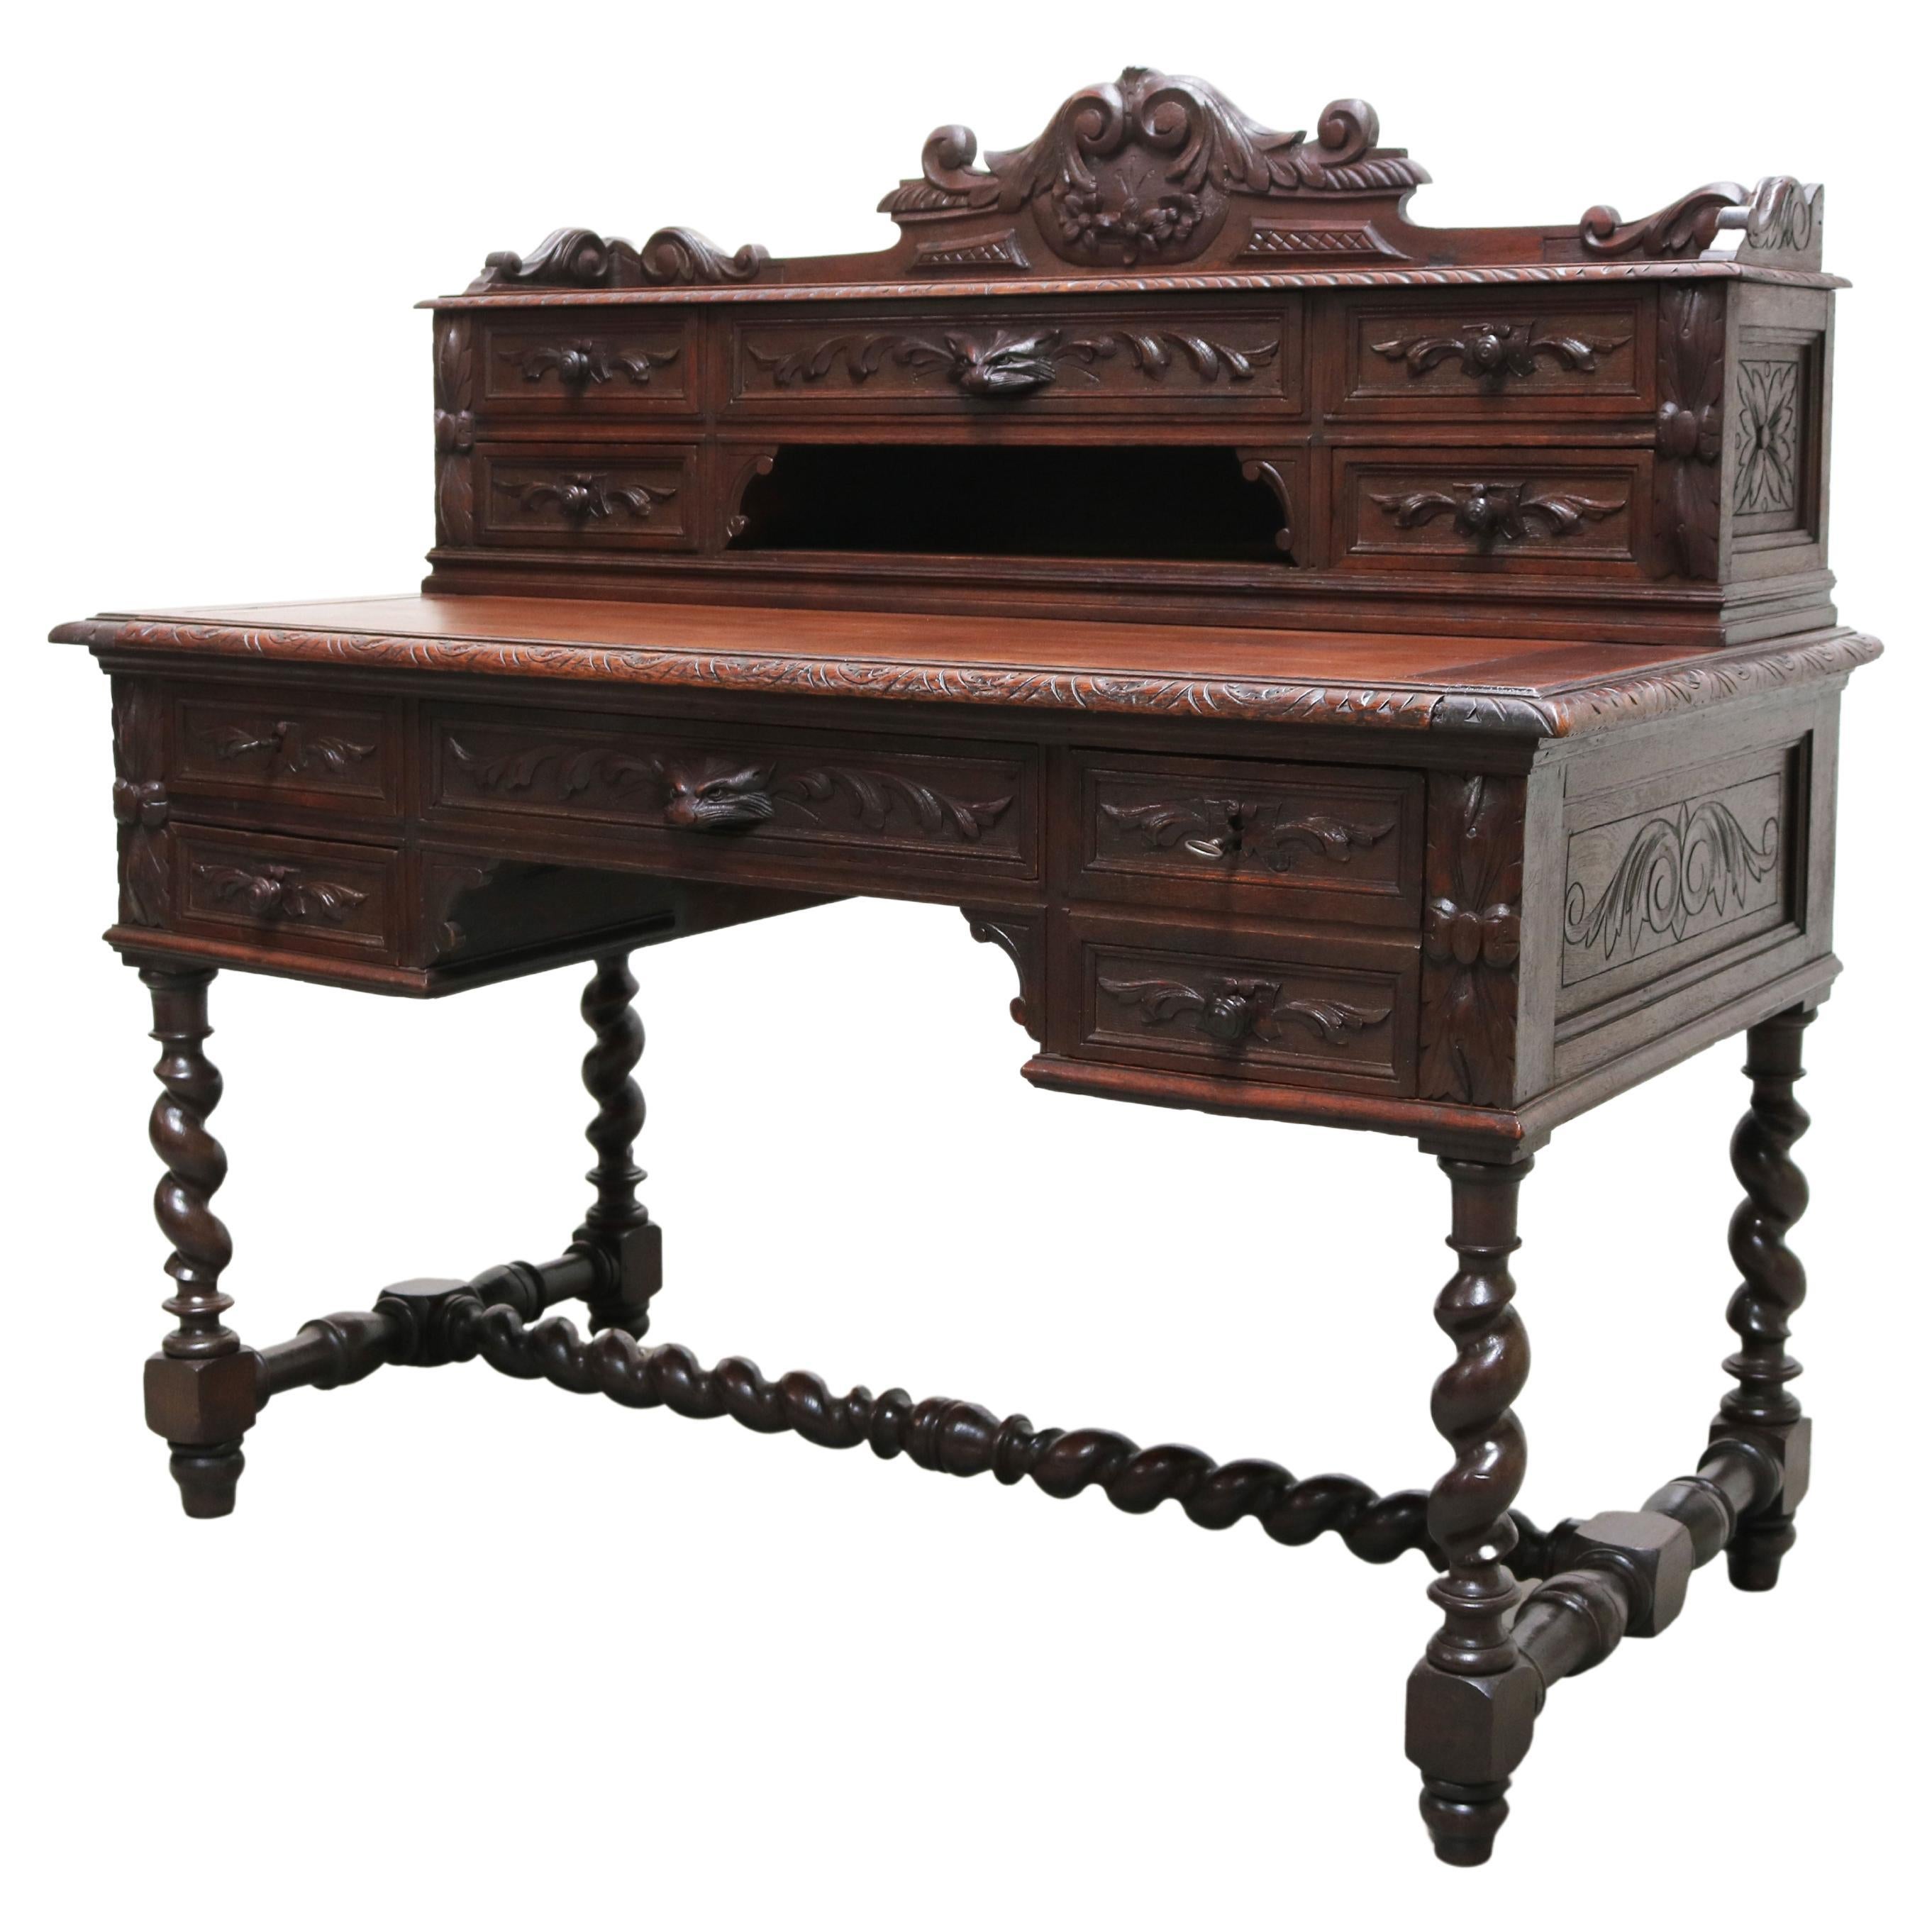 Antique French Renaissance Revival Hunt Desk / Secretaire Barley Twist Oak 19th